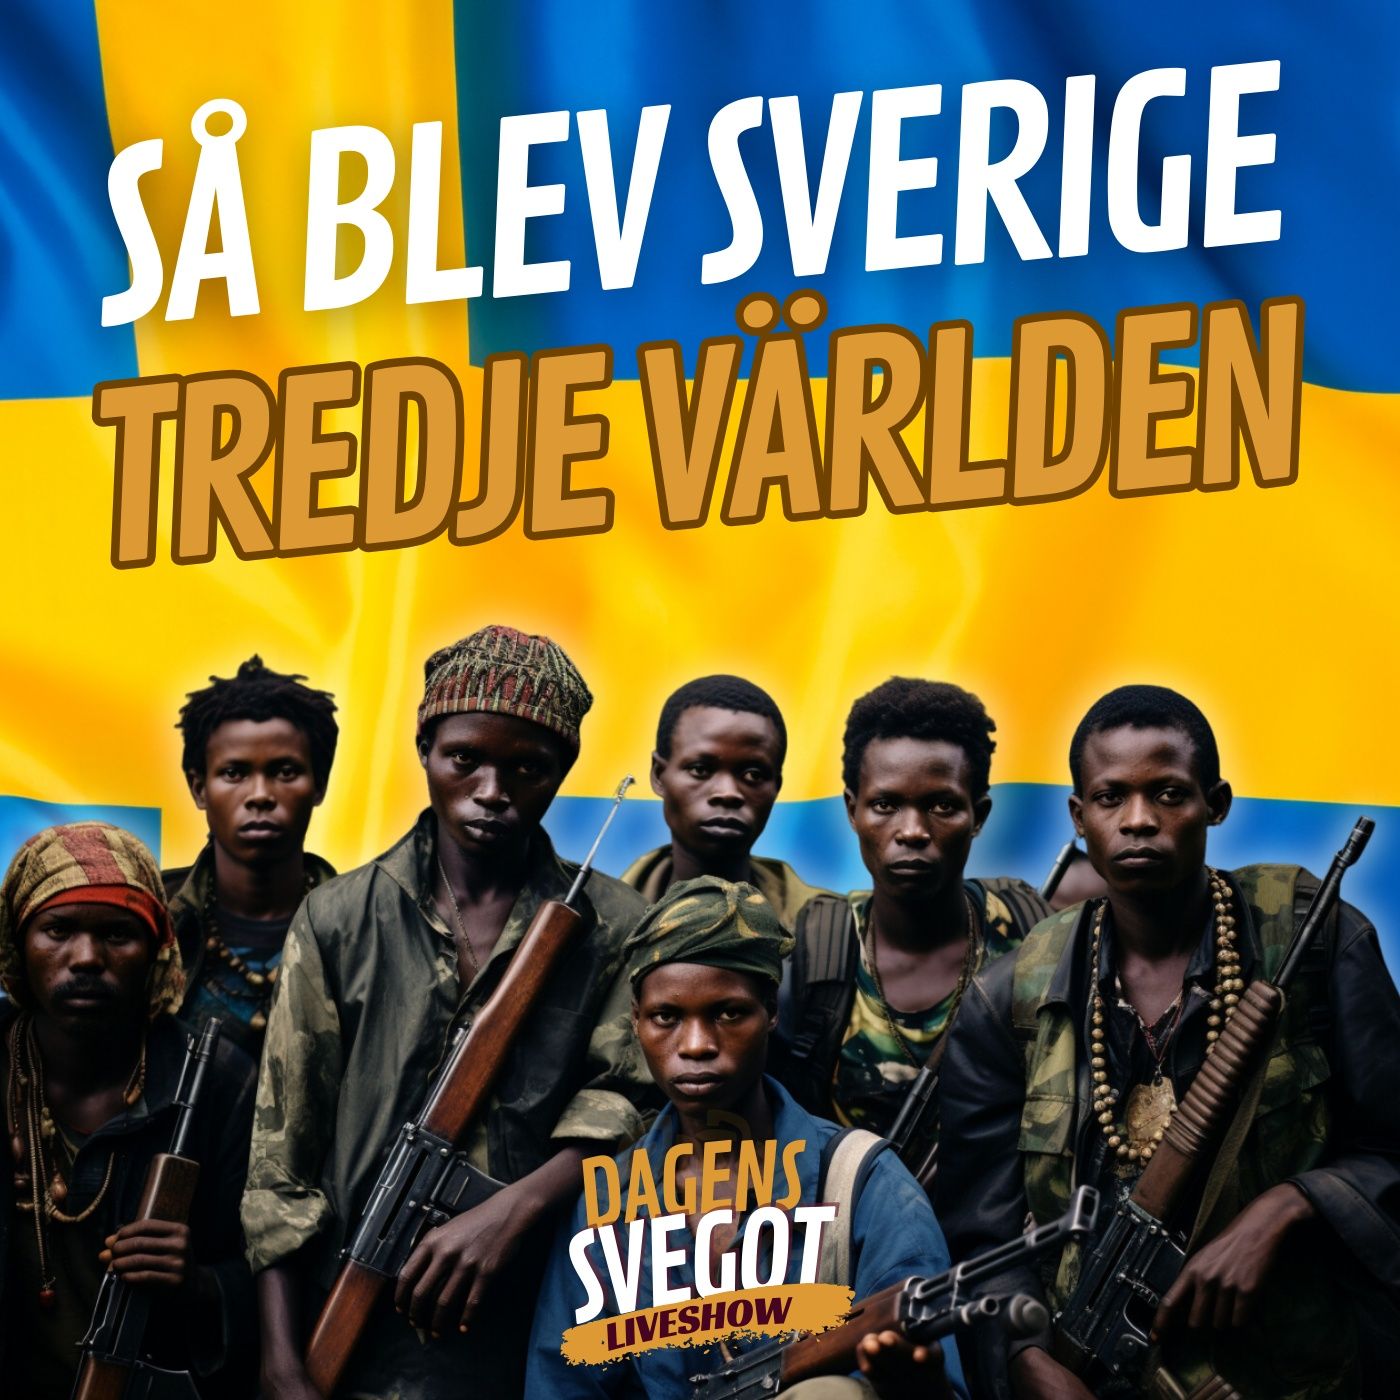 Kusingifte, klankrig och skjutningar: Så blev Sverige tredje världen